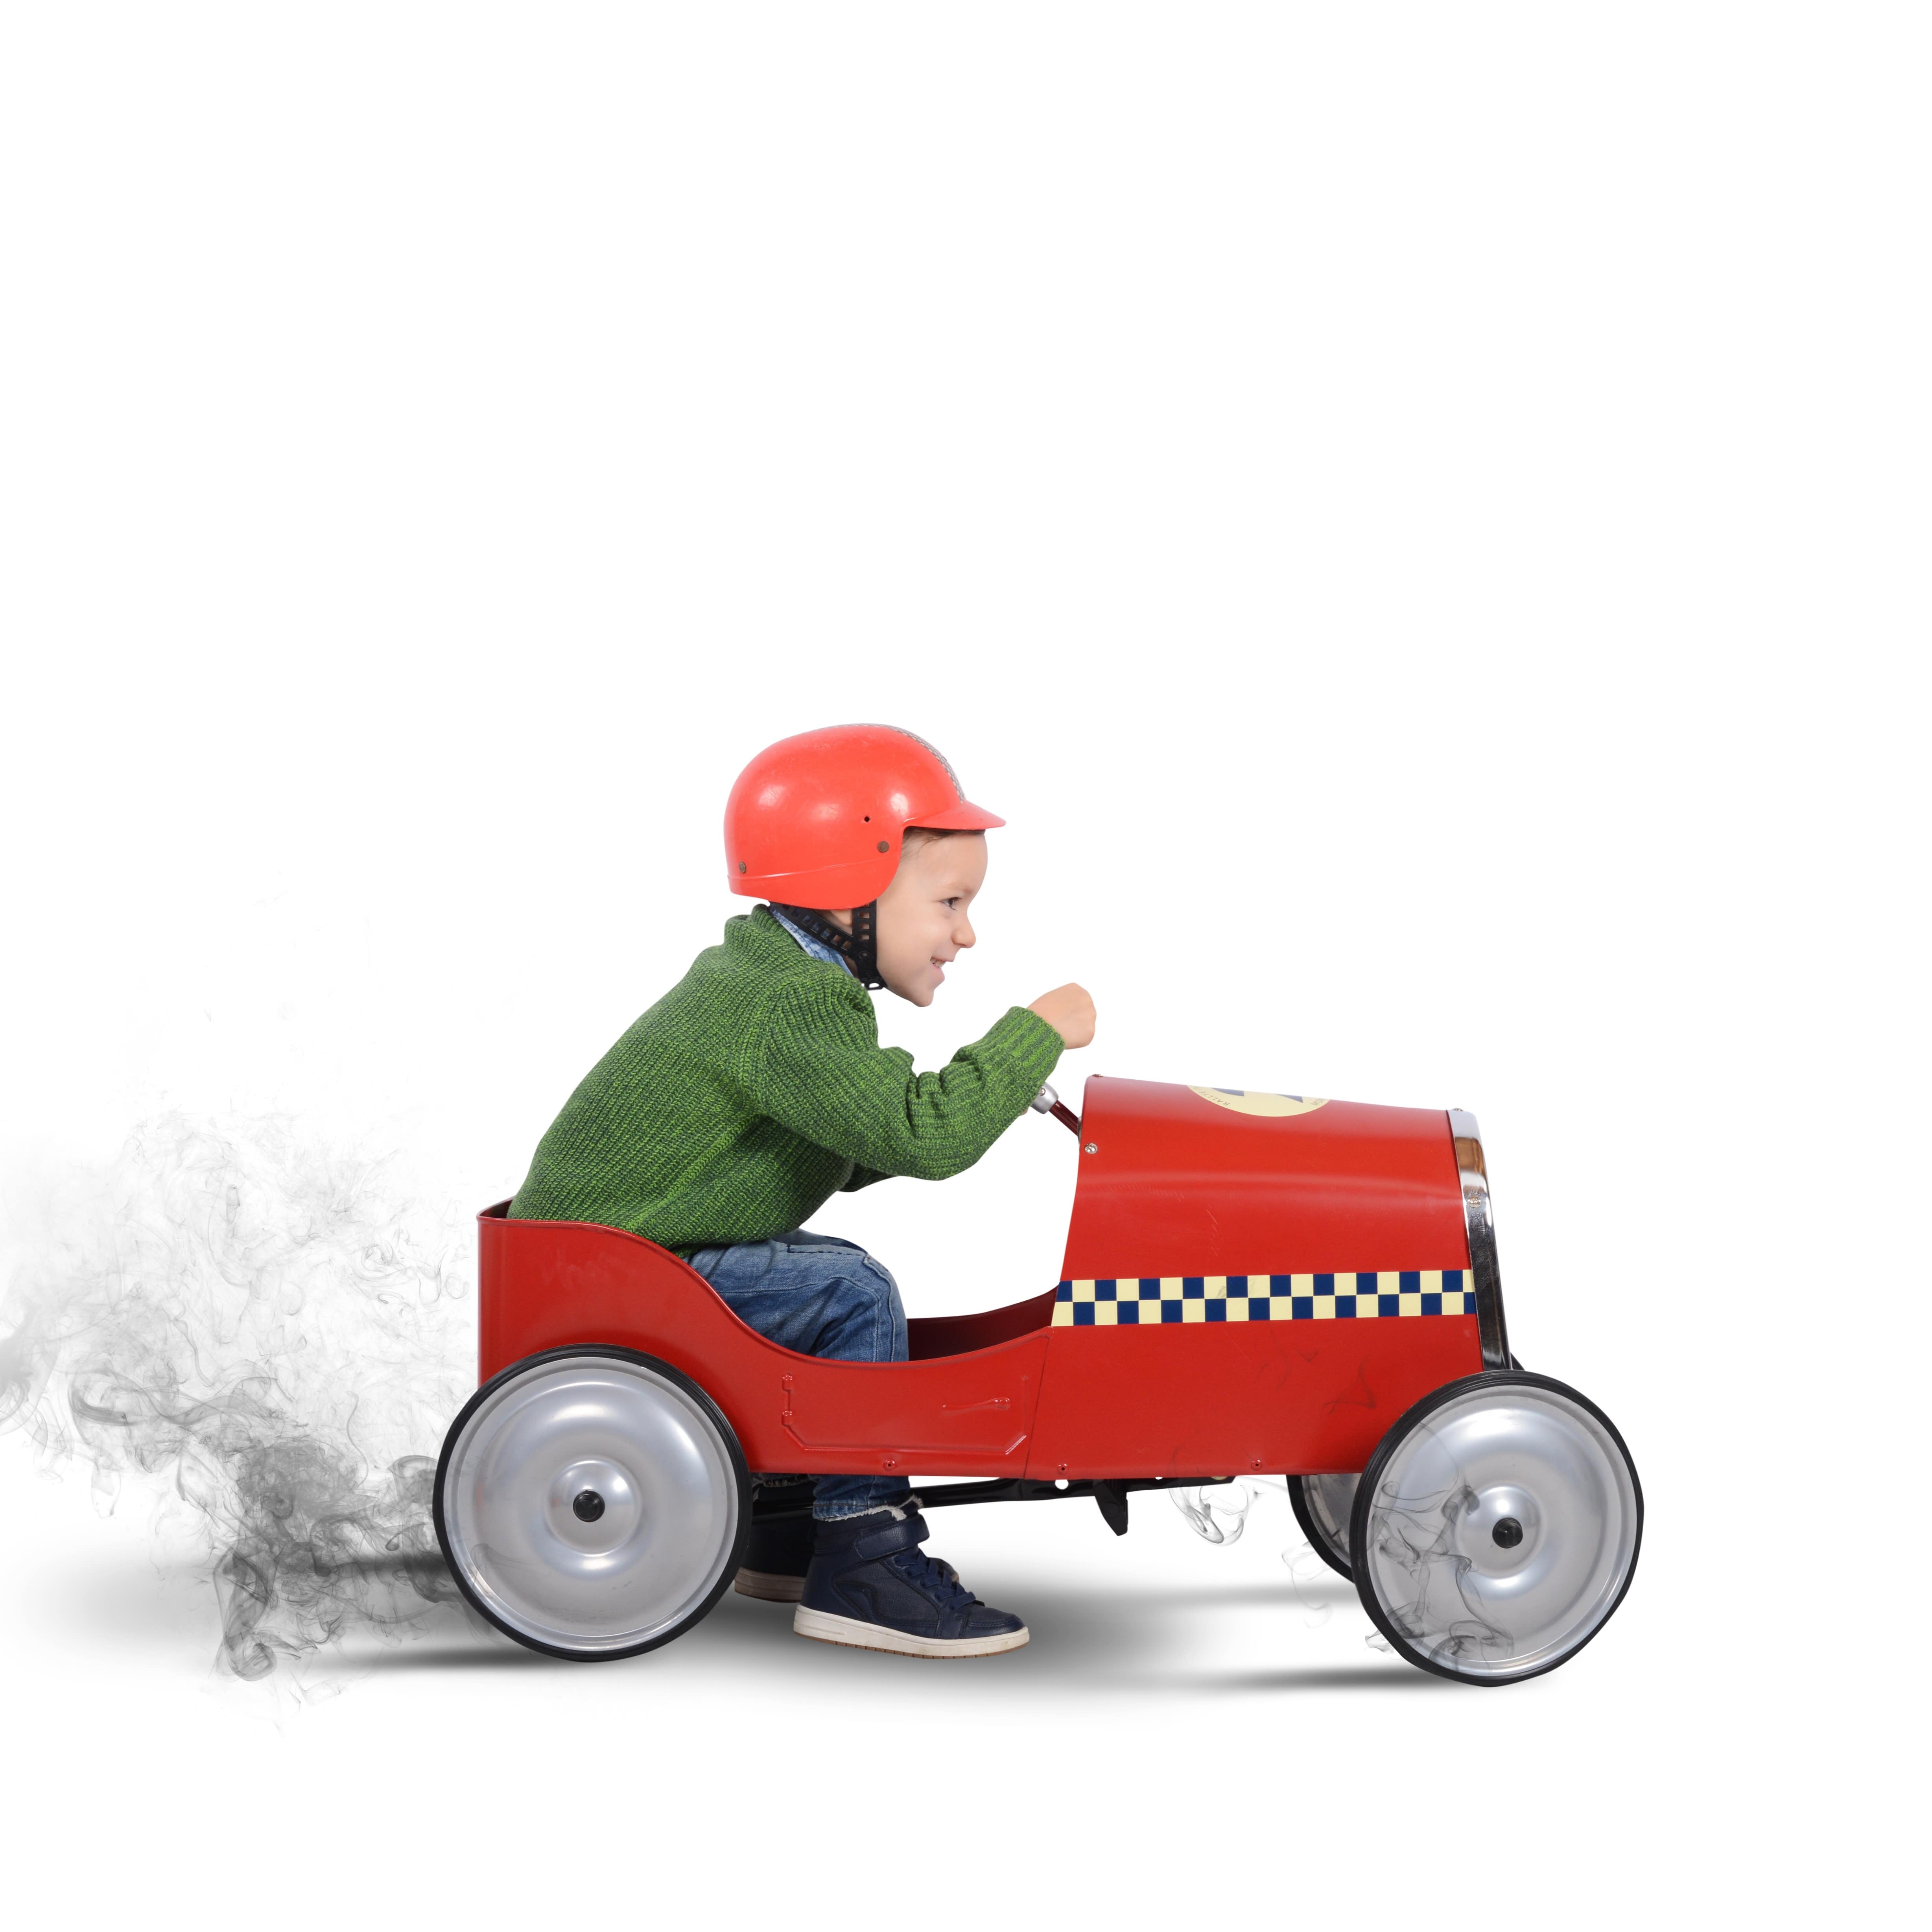 Junge in grünem Pulli und mit Helm in einem Spielzeugauto.